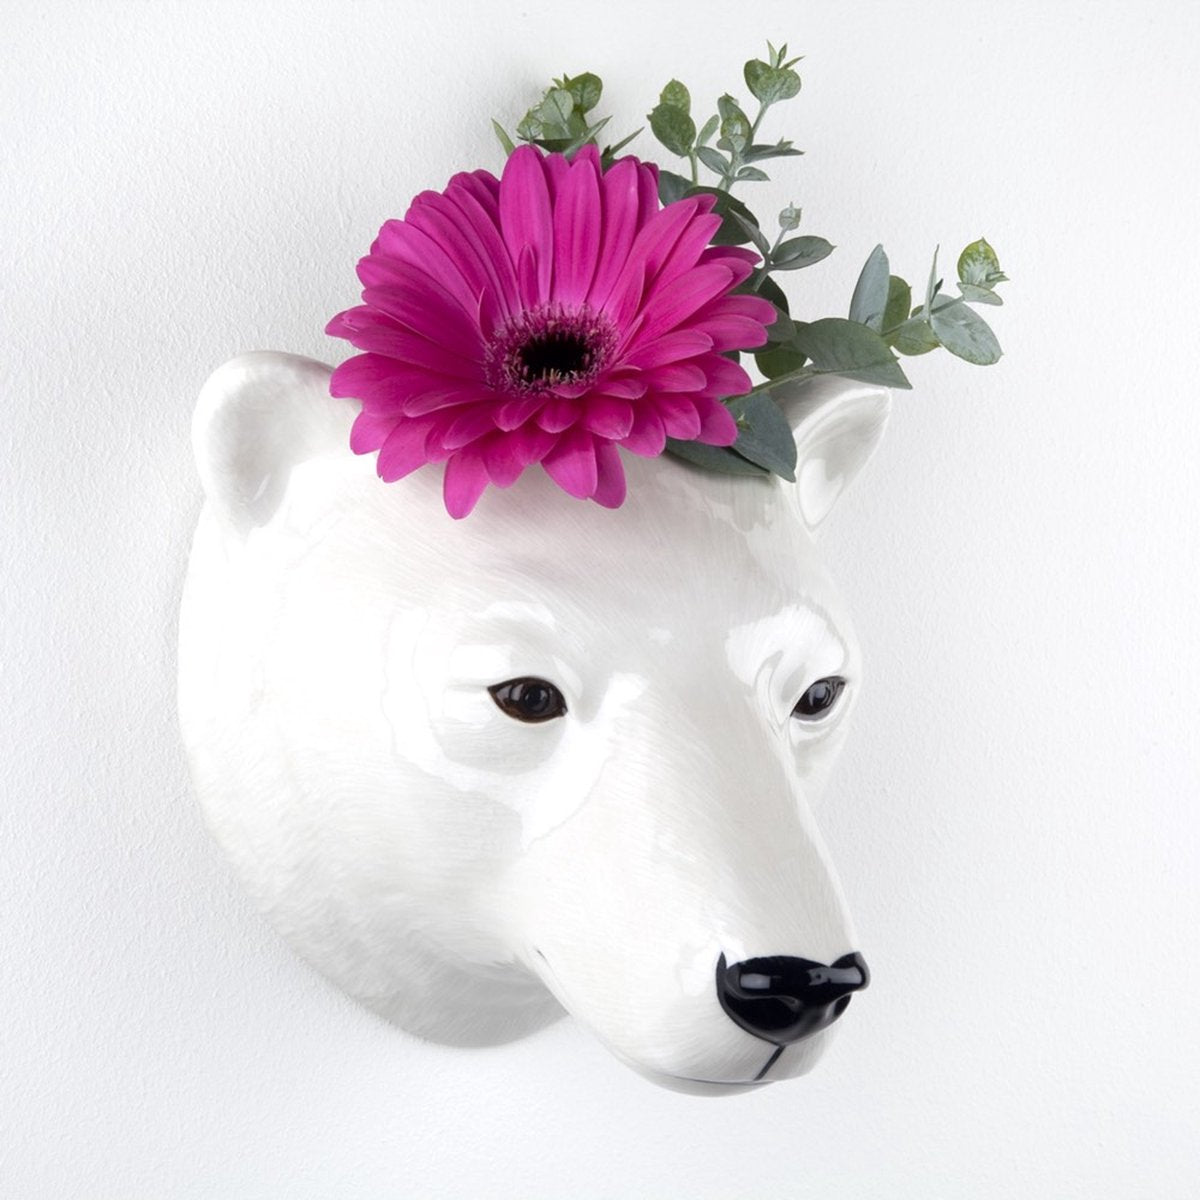 Polar Bear Wall Vase - Large